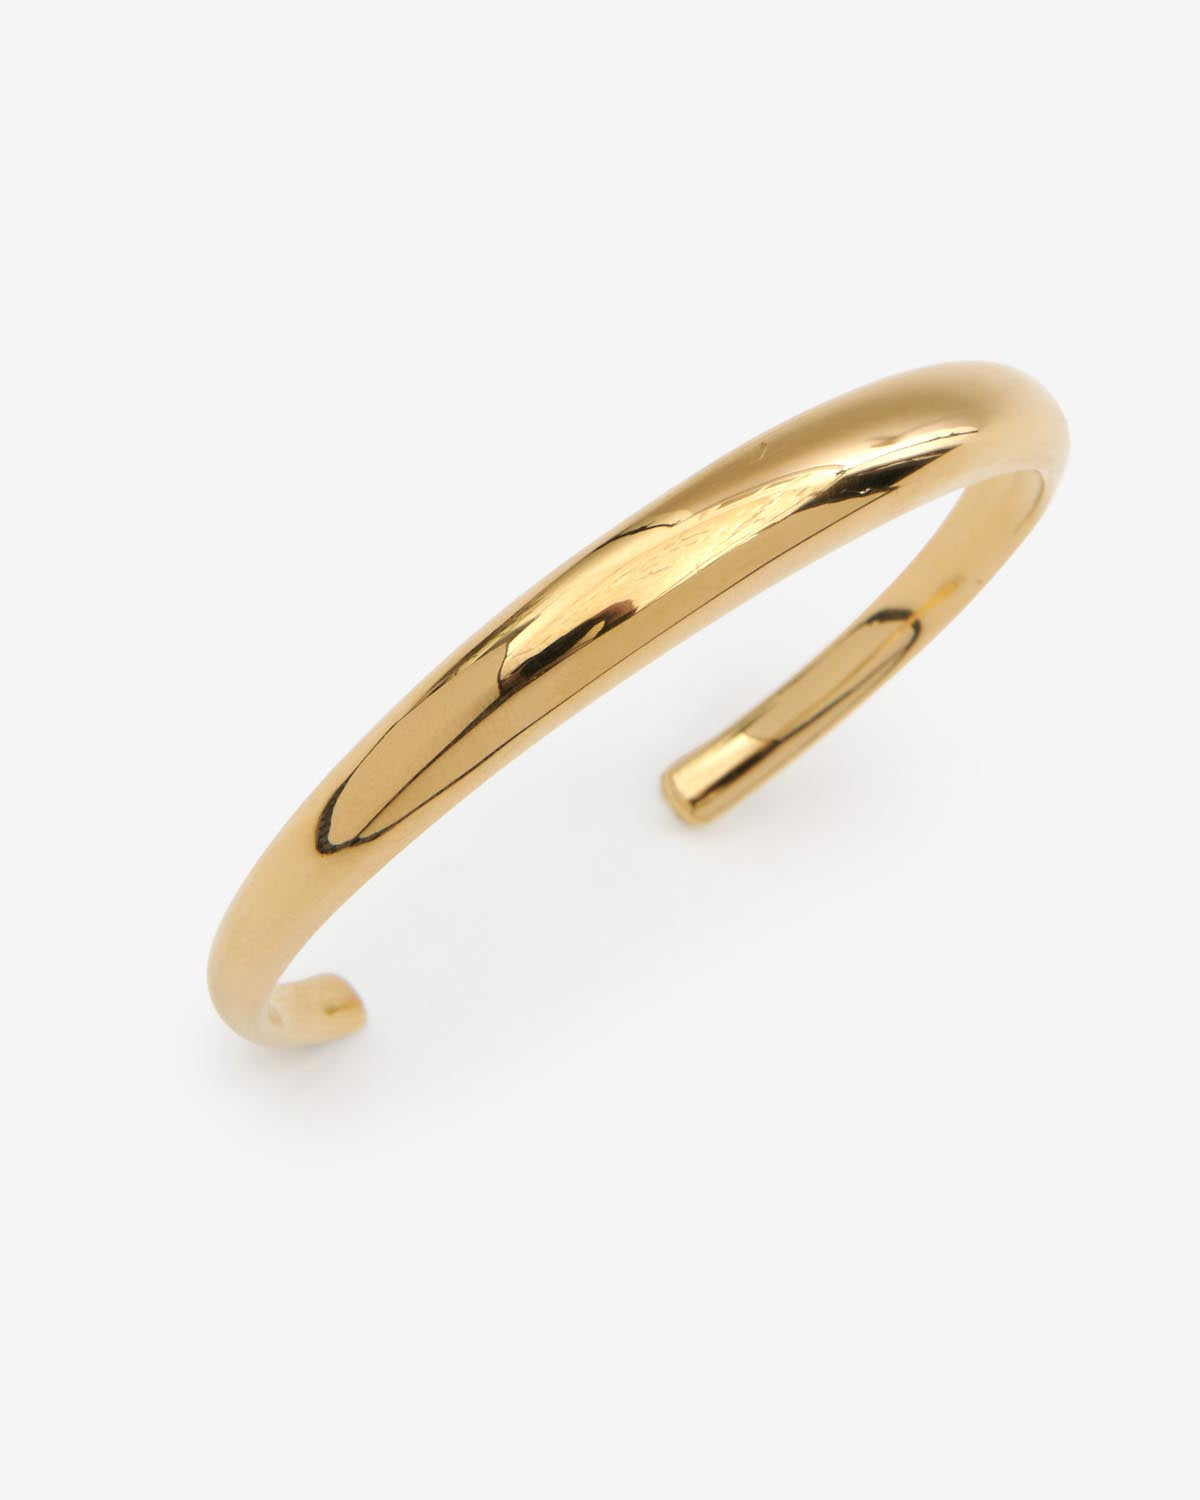 Pio bracelet Woman Gold 2